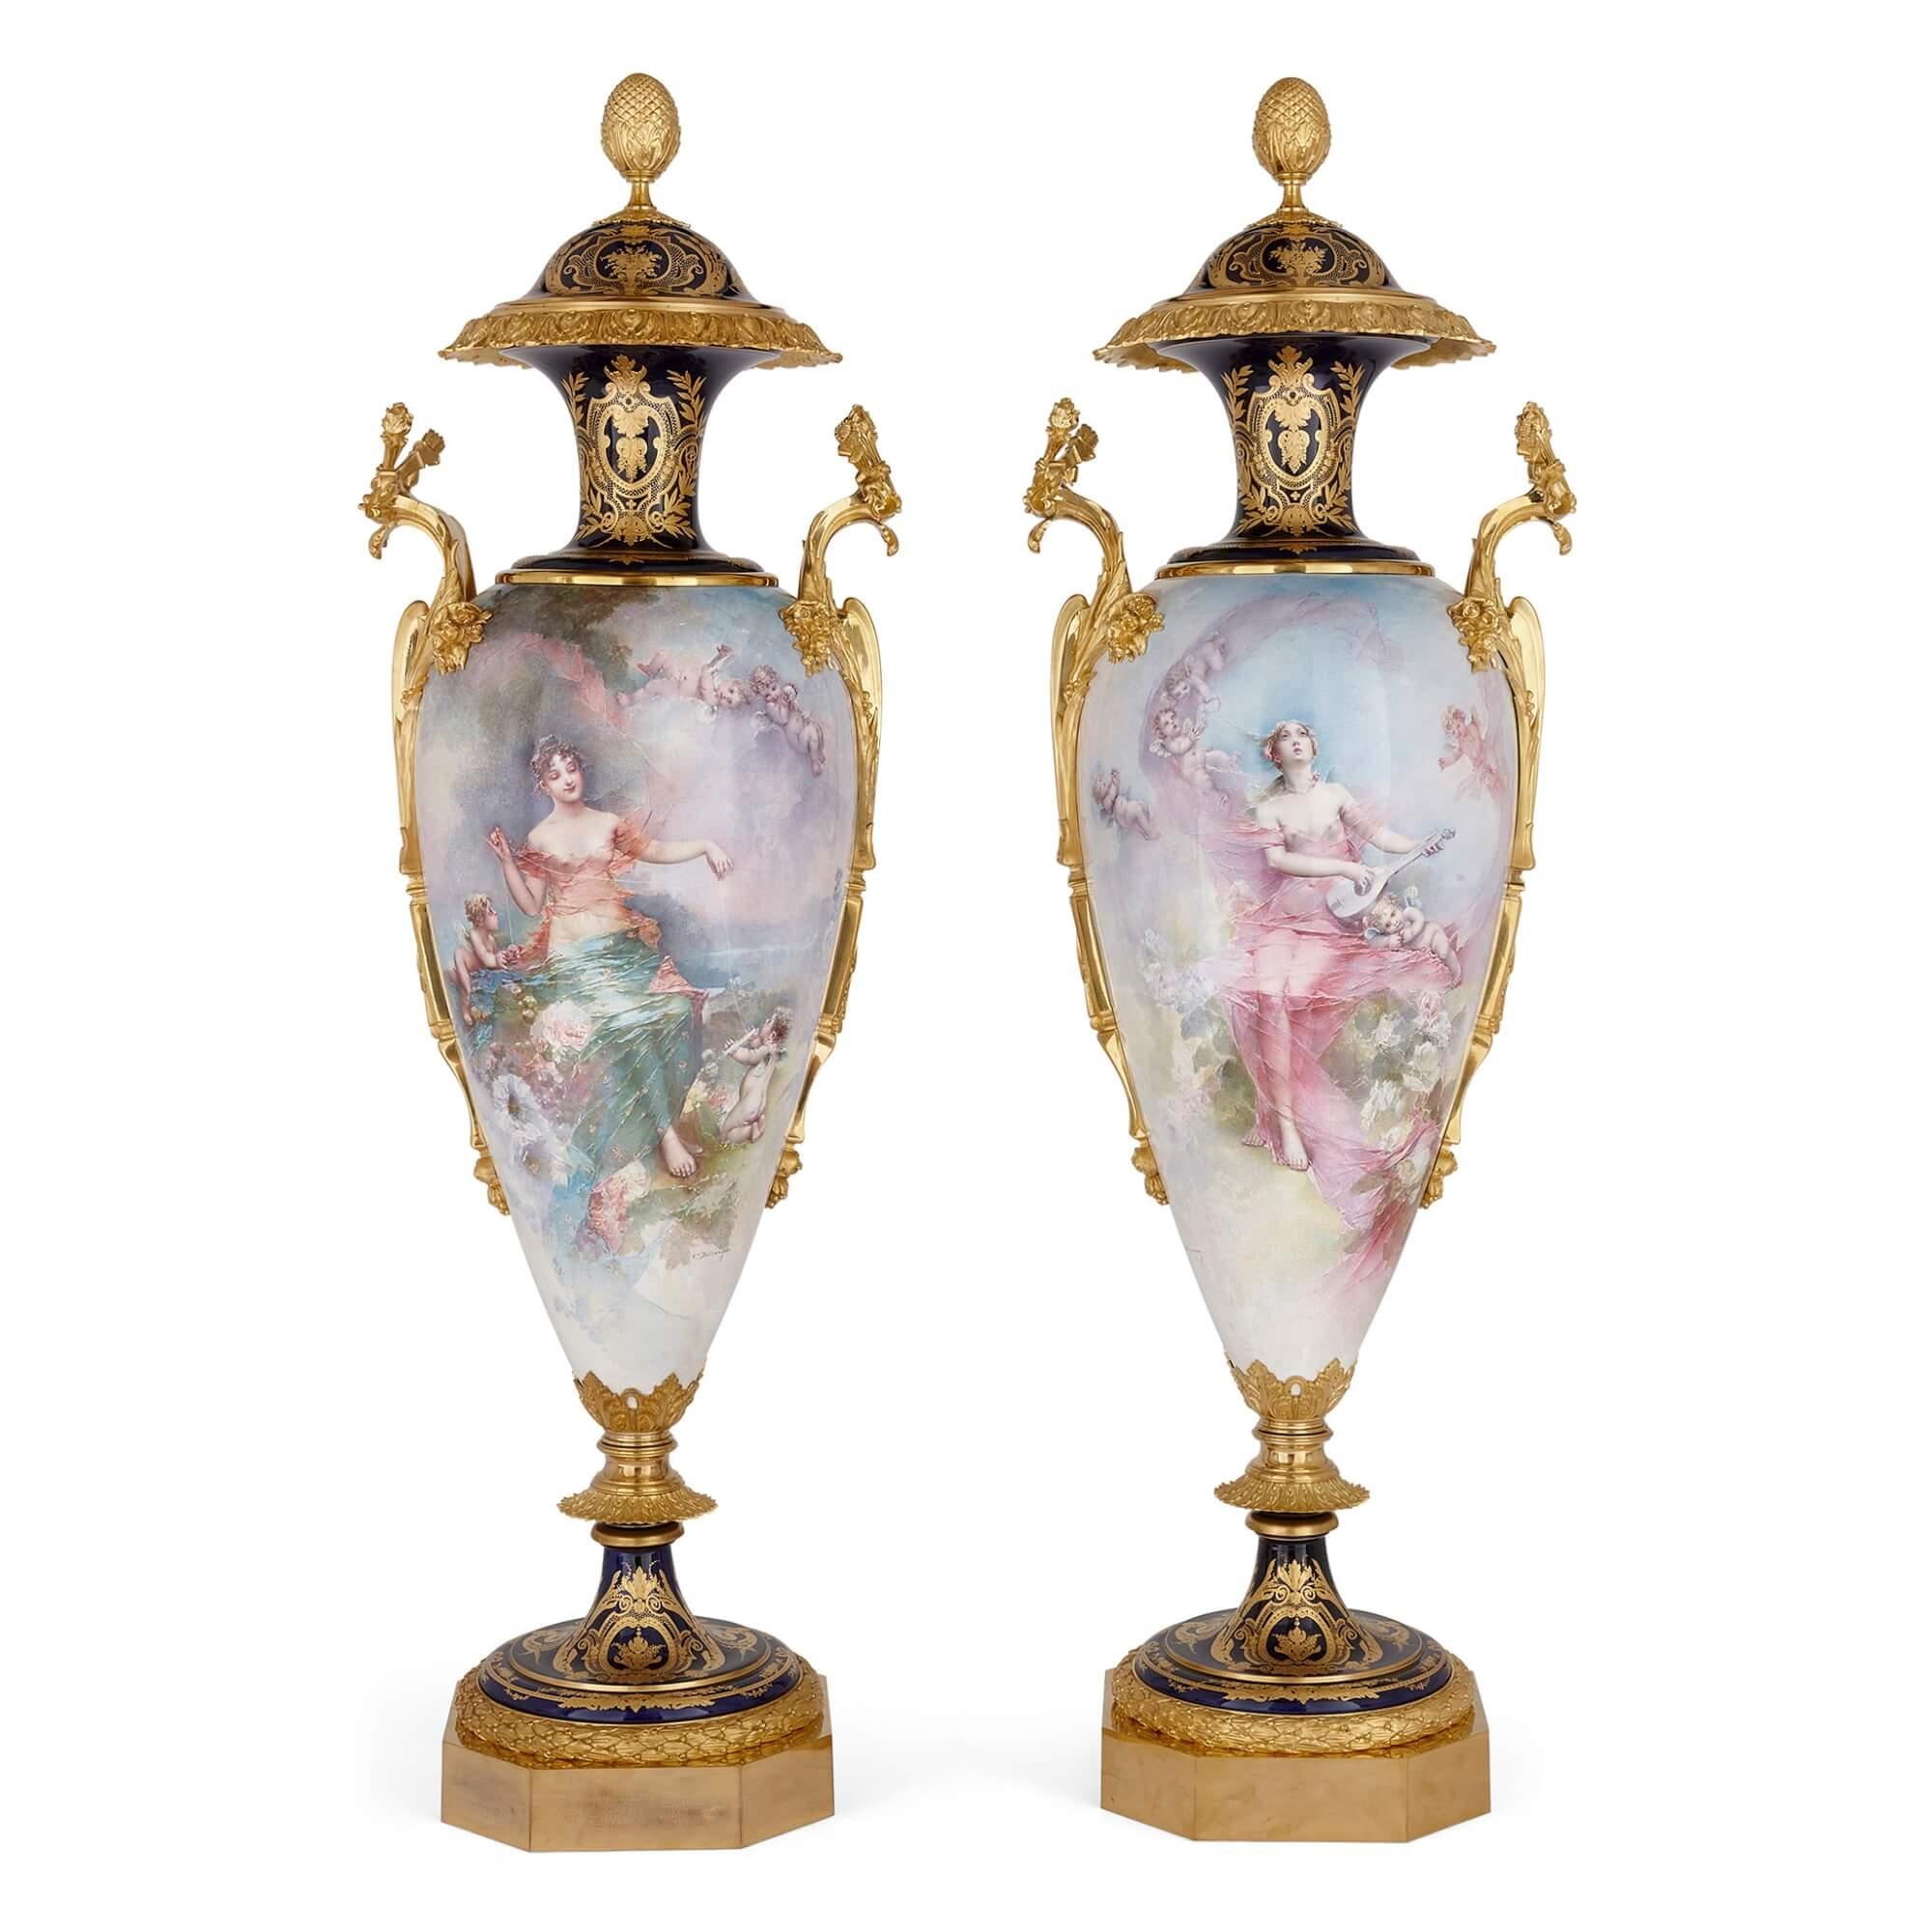 Zwei sehr große französische Vasen aus Porzellan und Ormolu im Sèvres-Stil
Französisch, Ende 19. Jahrhundert 
Höhe 151cm, Breite 45cm, Tiefe 39cm

Dieses Vasenpaar im Stil von Sèvres, einer der besten Porzellanmanufakturen, stellt eine charmante